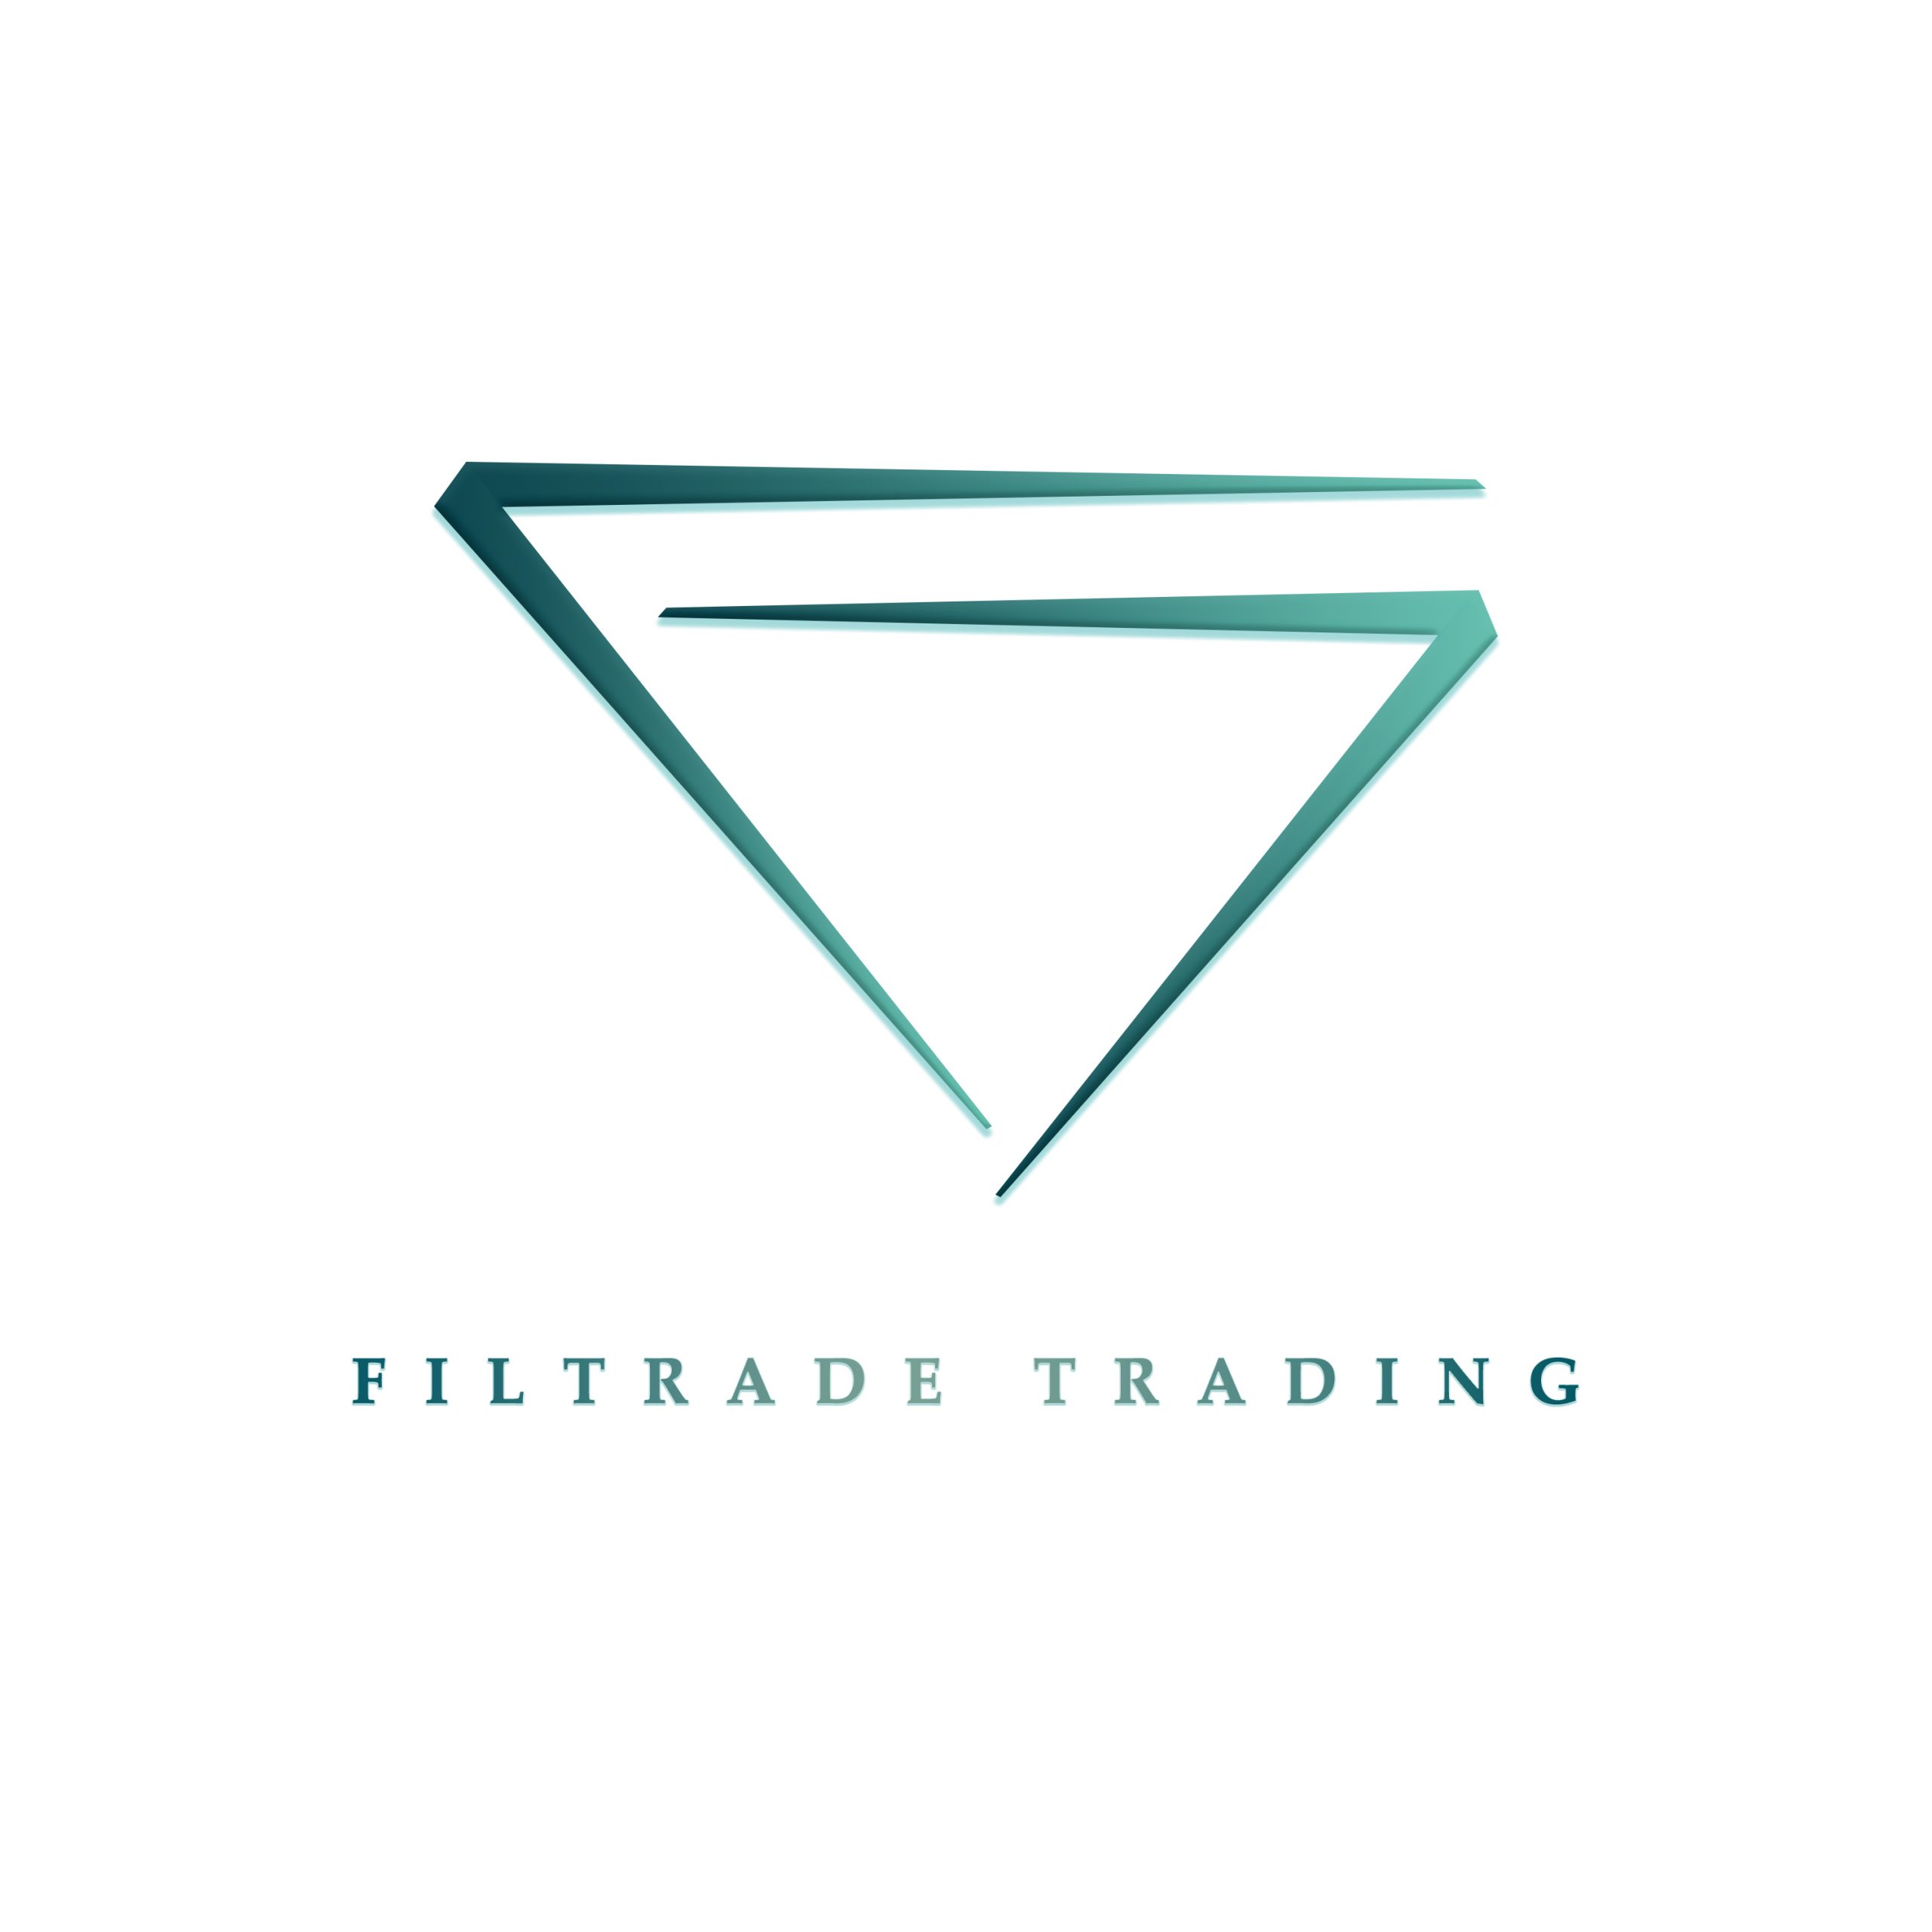 Stock Traders - Finance market logo vector - Roven Logos